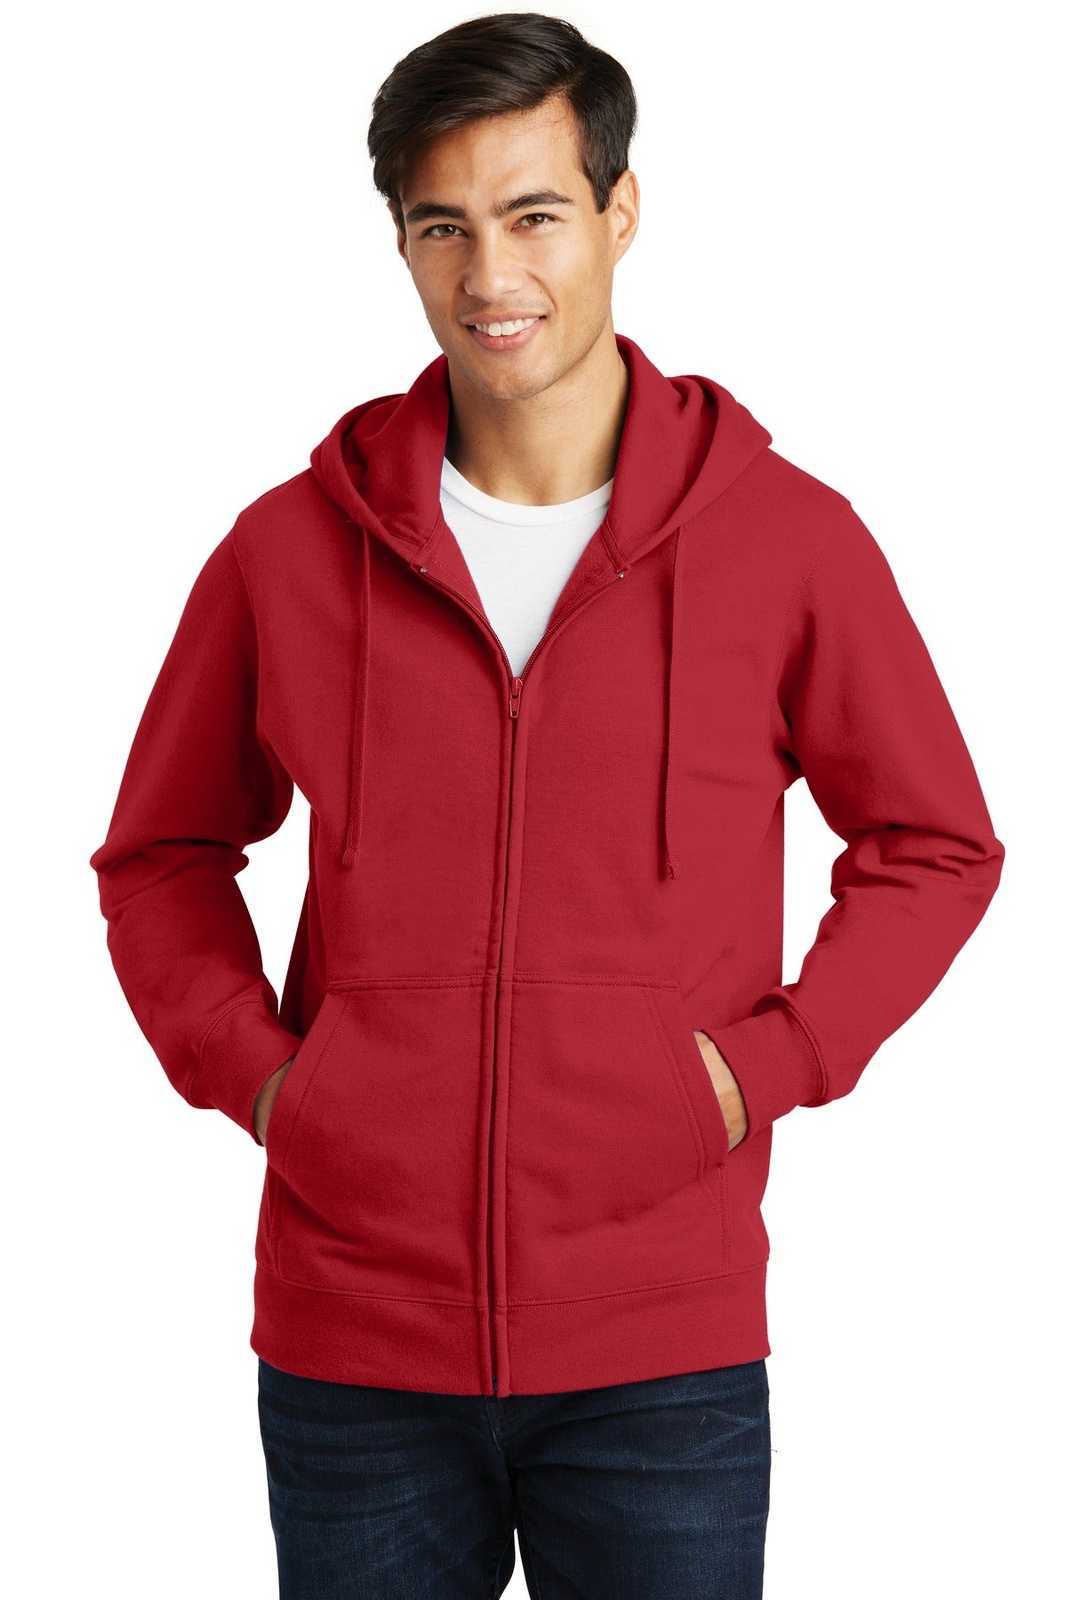 Port & Company PC850ZH Fan Favorite Fleece Full-Zip Hooded Sweatshirt - Team Cardinal - HIT a Double - 1